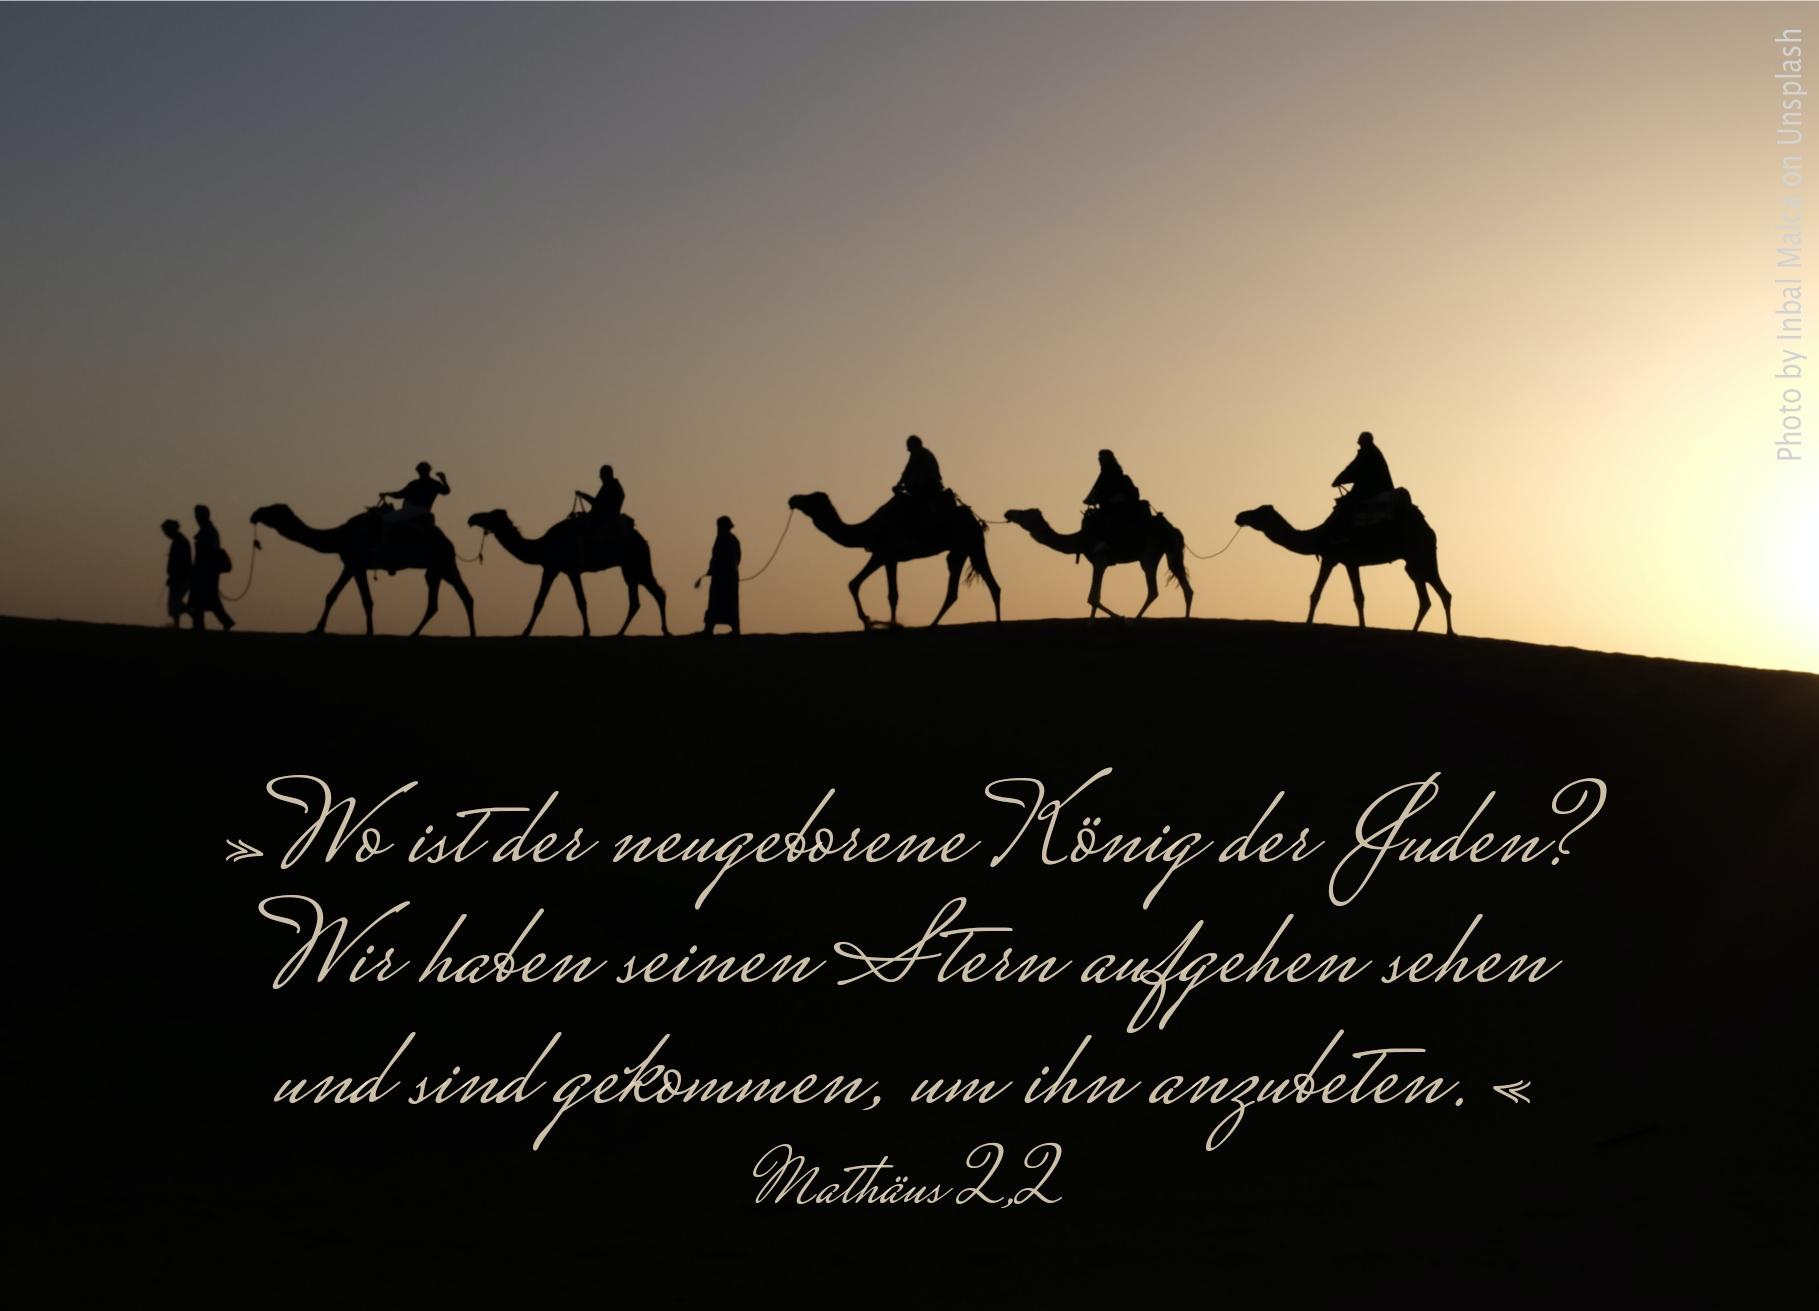 alt="silhouette_von_karawane_erwartet_bibelhoerbuch_die_sterndeuter"